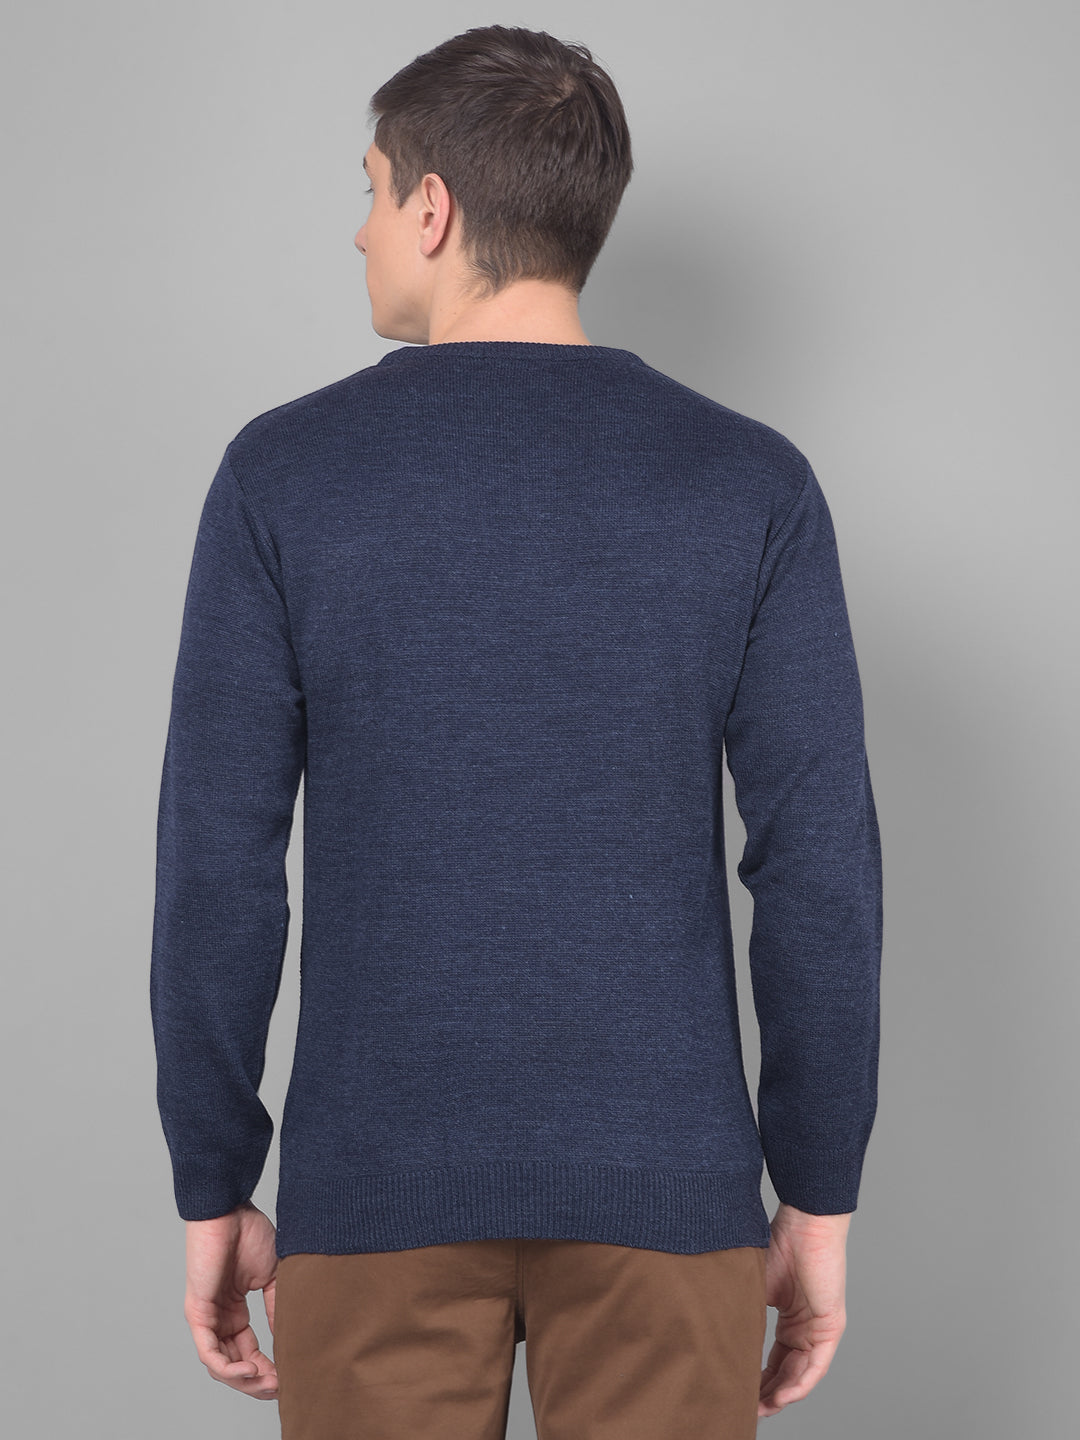 cobb solid navy blue round neck sweater